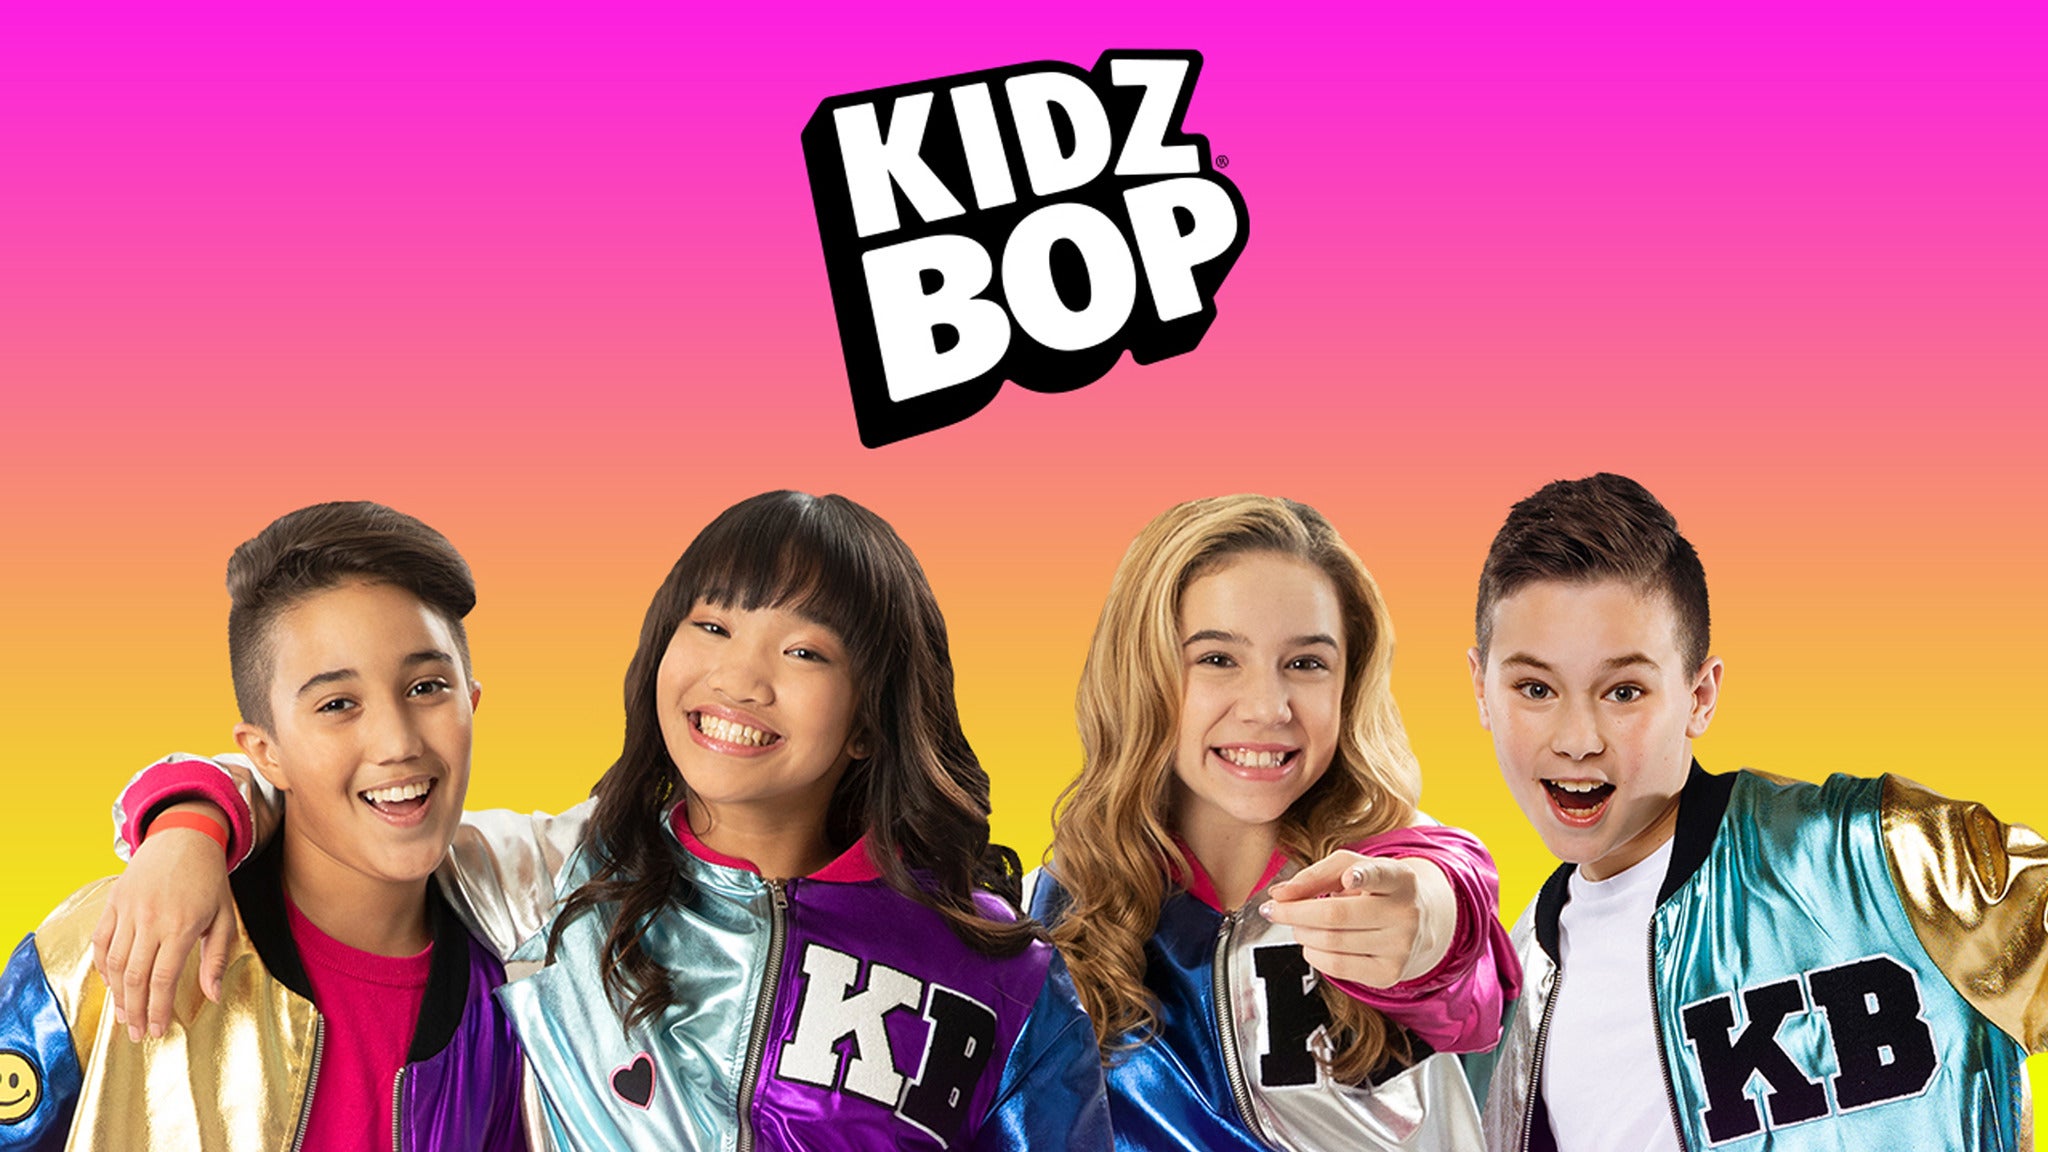 KIDZ BOP Kids in Atlantic City promo photo for Live Nation Mobile App presale offer code